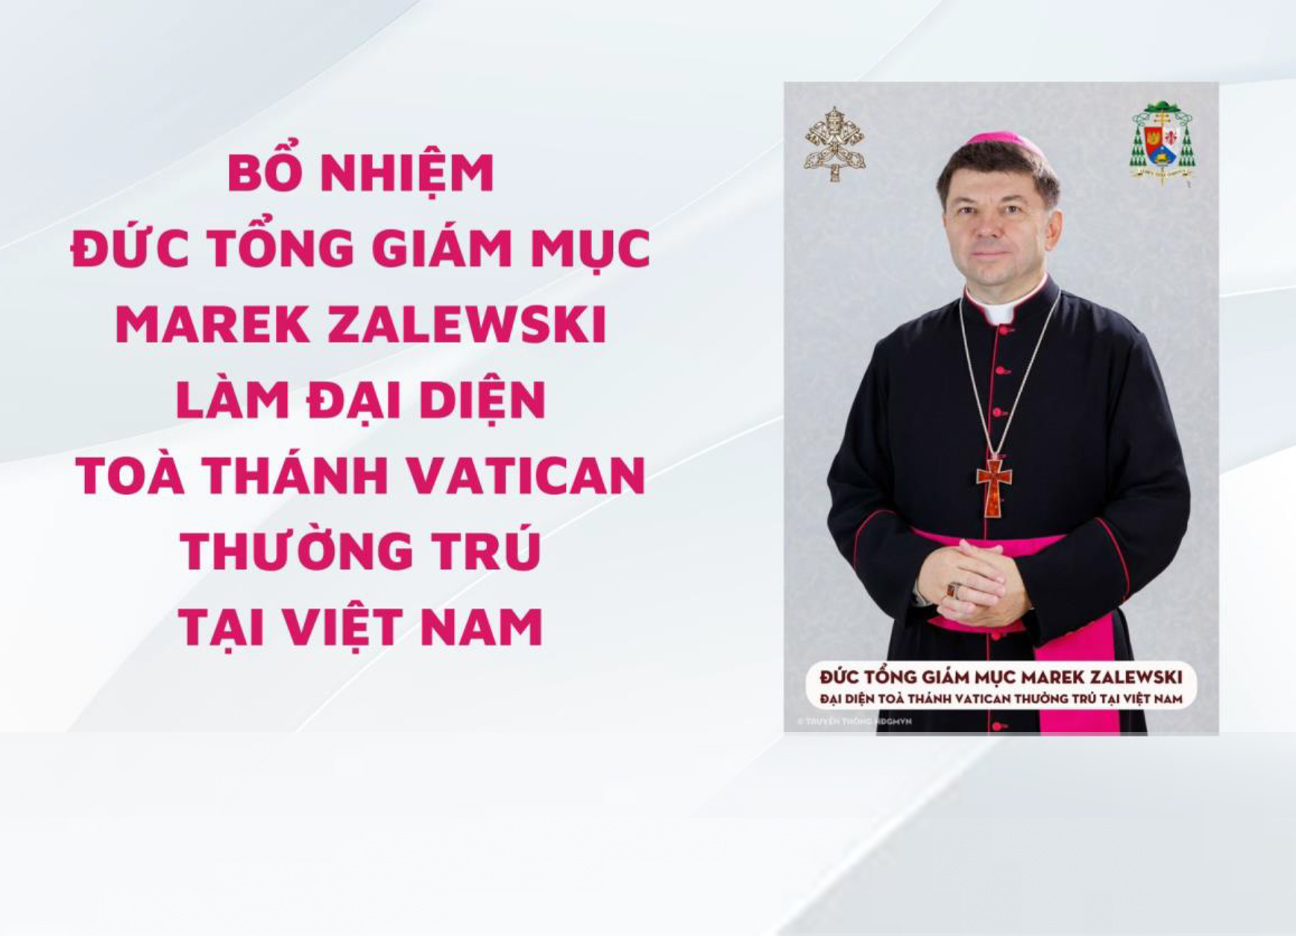 Bổ nhiệm Đức Tổng Giám Mục Marek Zalewski làm Đại diện Toà Thánh Vatican thường trú tại Việt Nam.